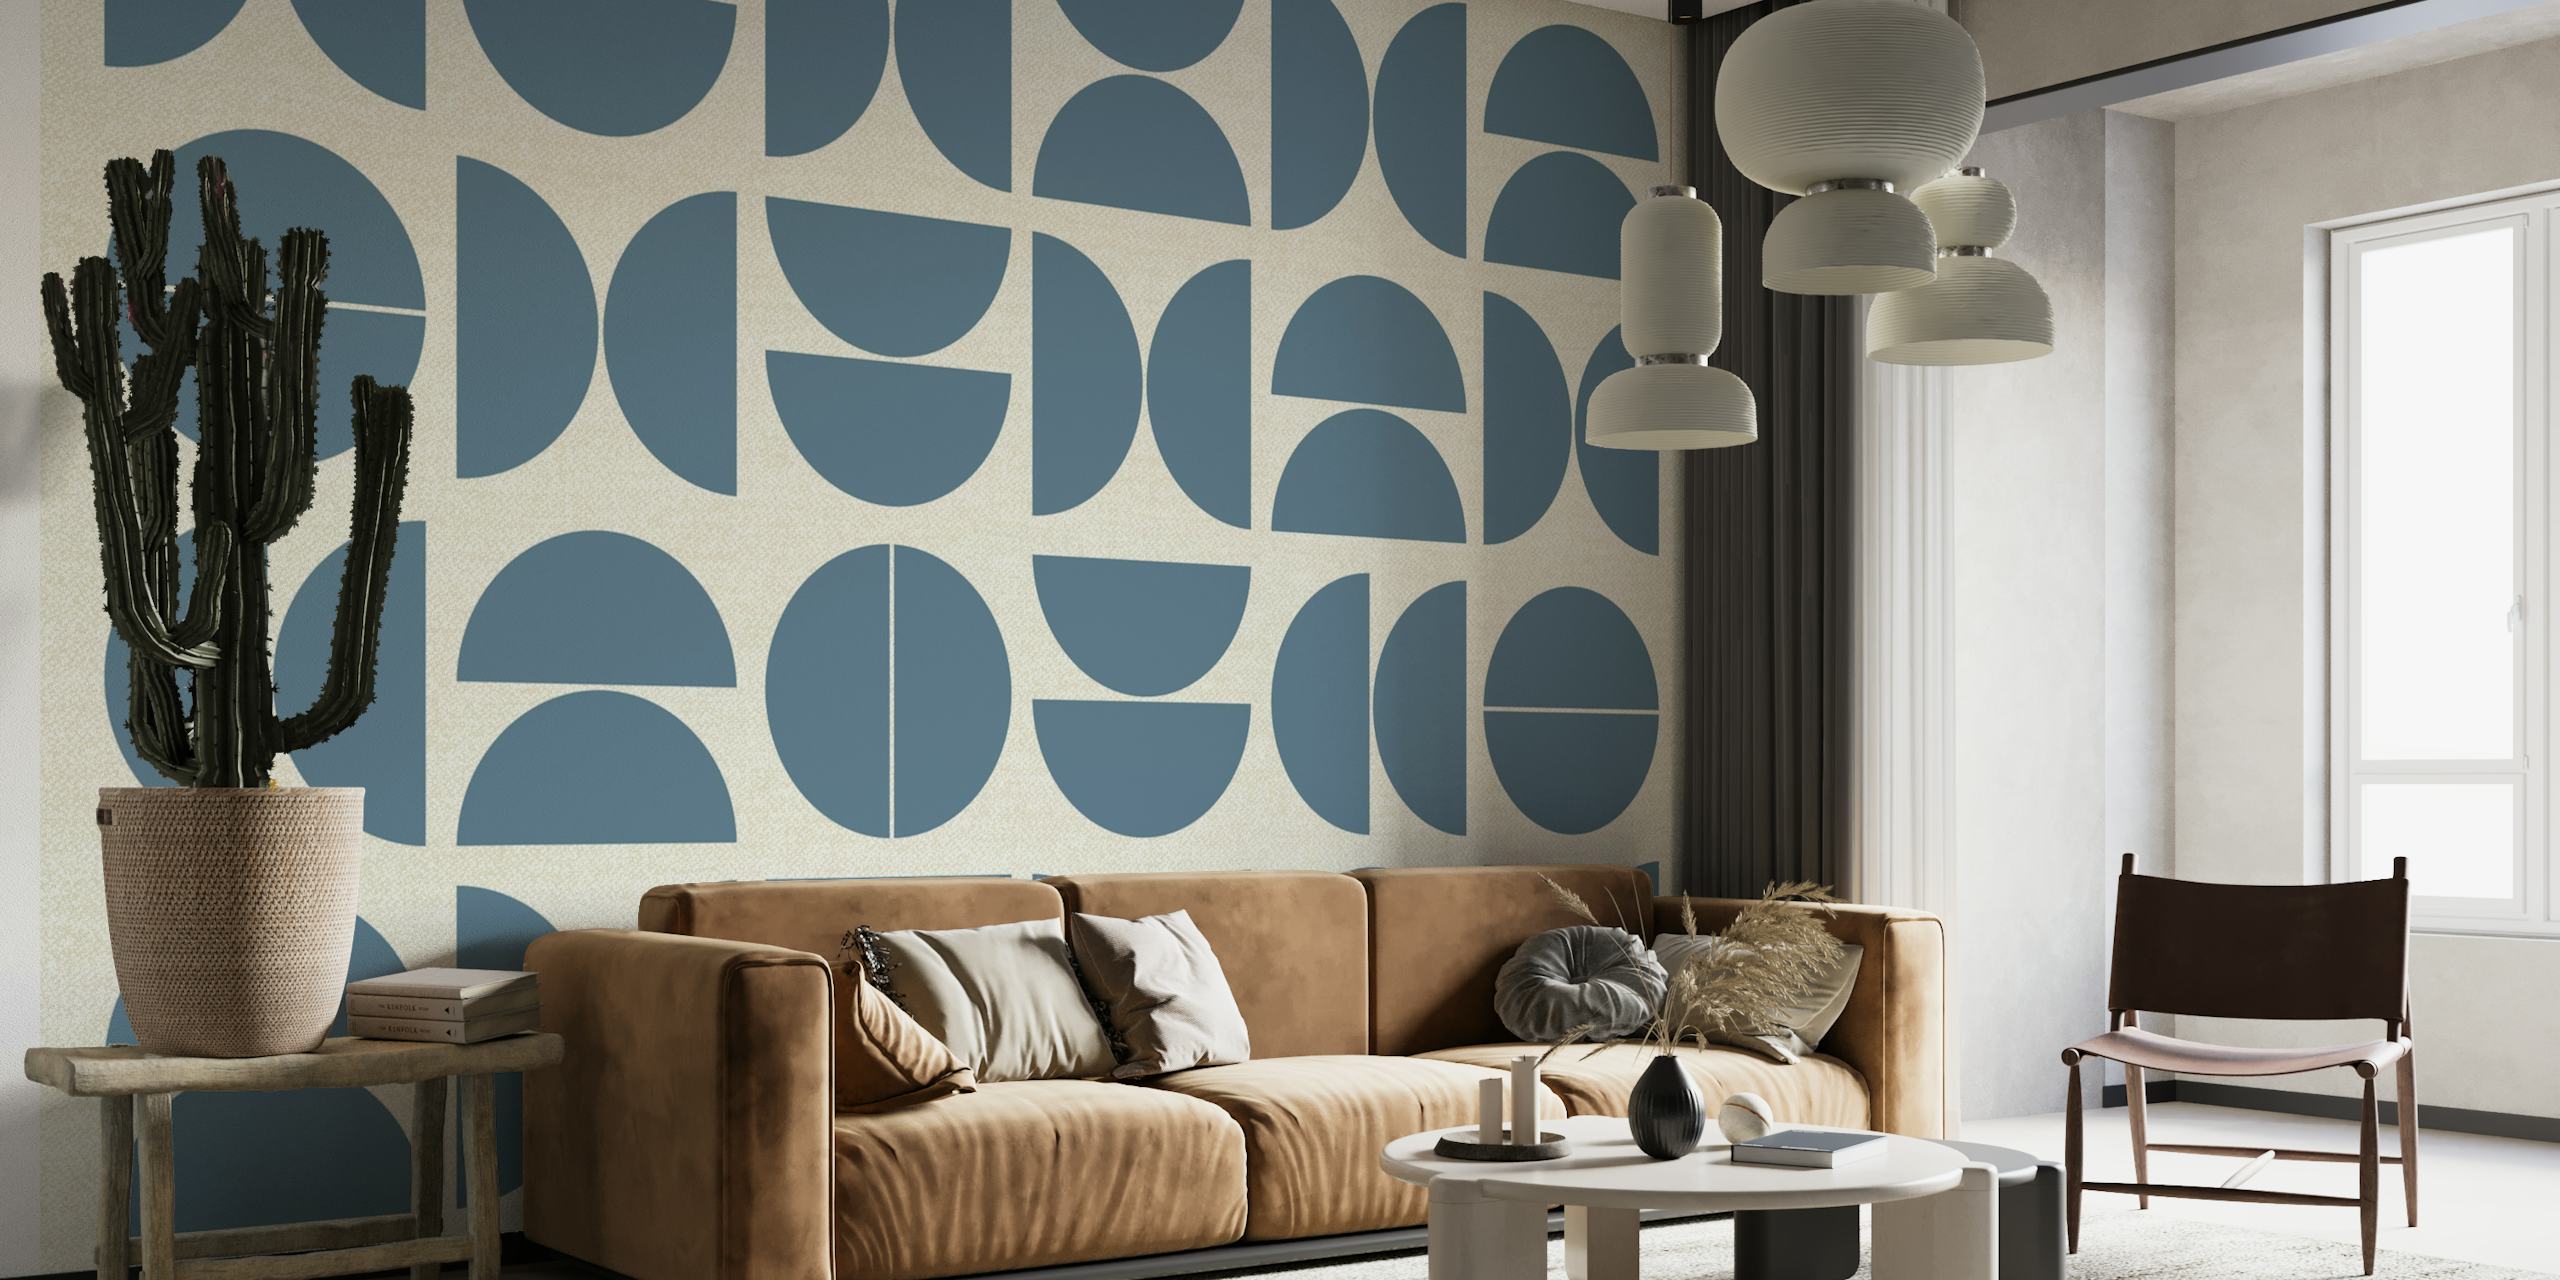 Papier peint abstrait de style Bauhaus avec des motifs circulaires géométriques dans les tons de bleu